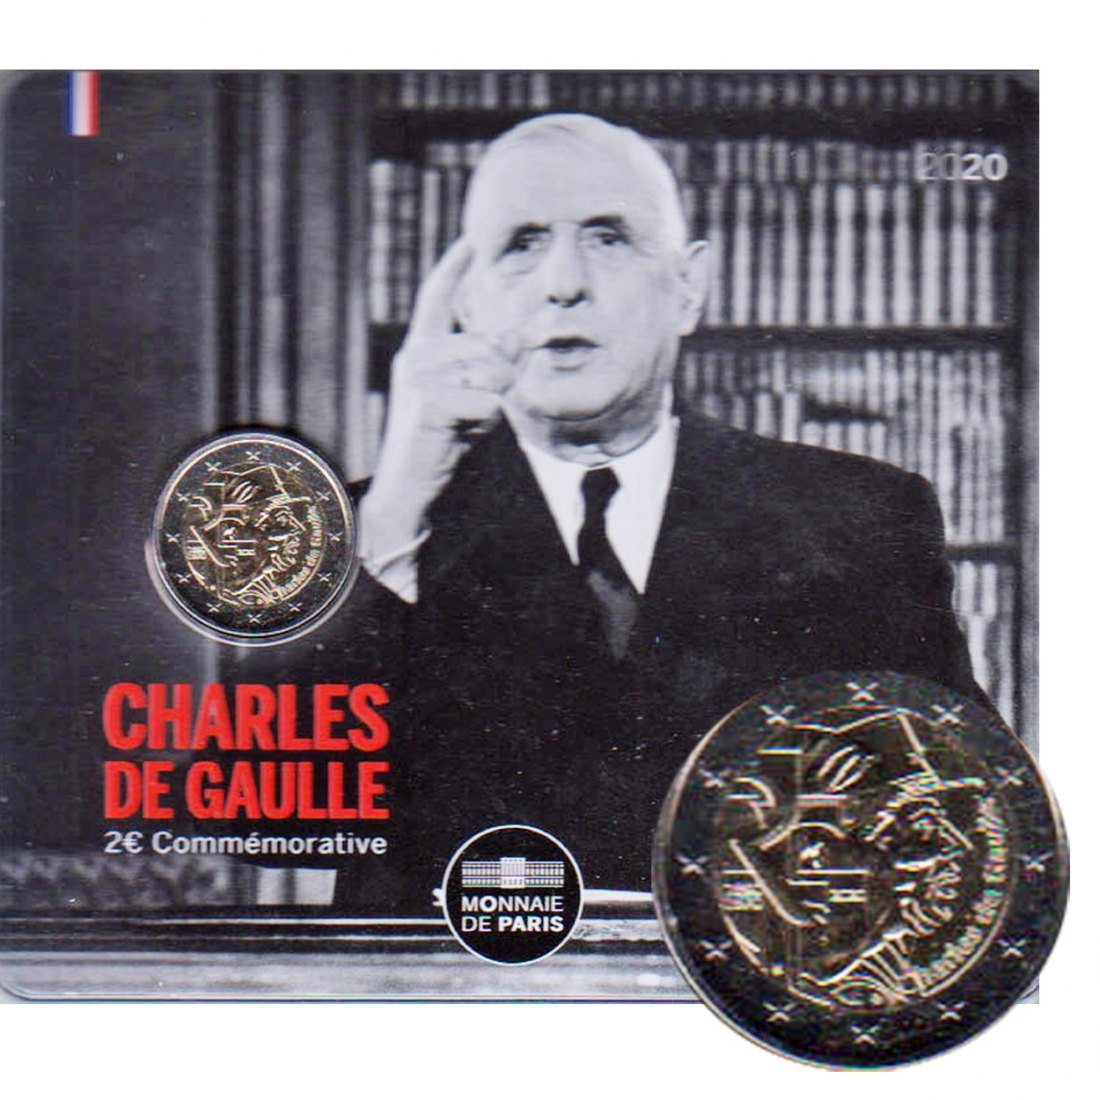  Offiz. Coincard 2 Euro Sondermünze Frankreich *Charles de Gaulle* 2020 nur 10.000St!   